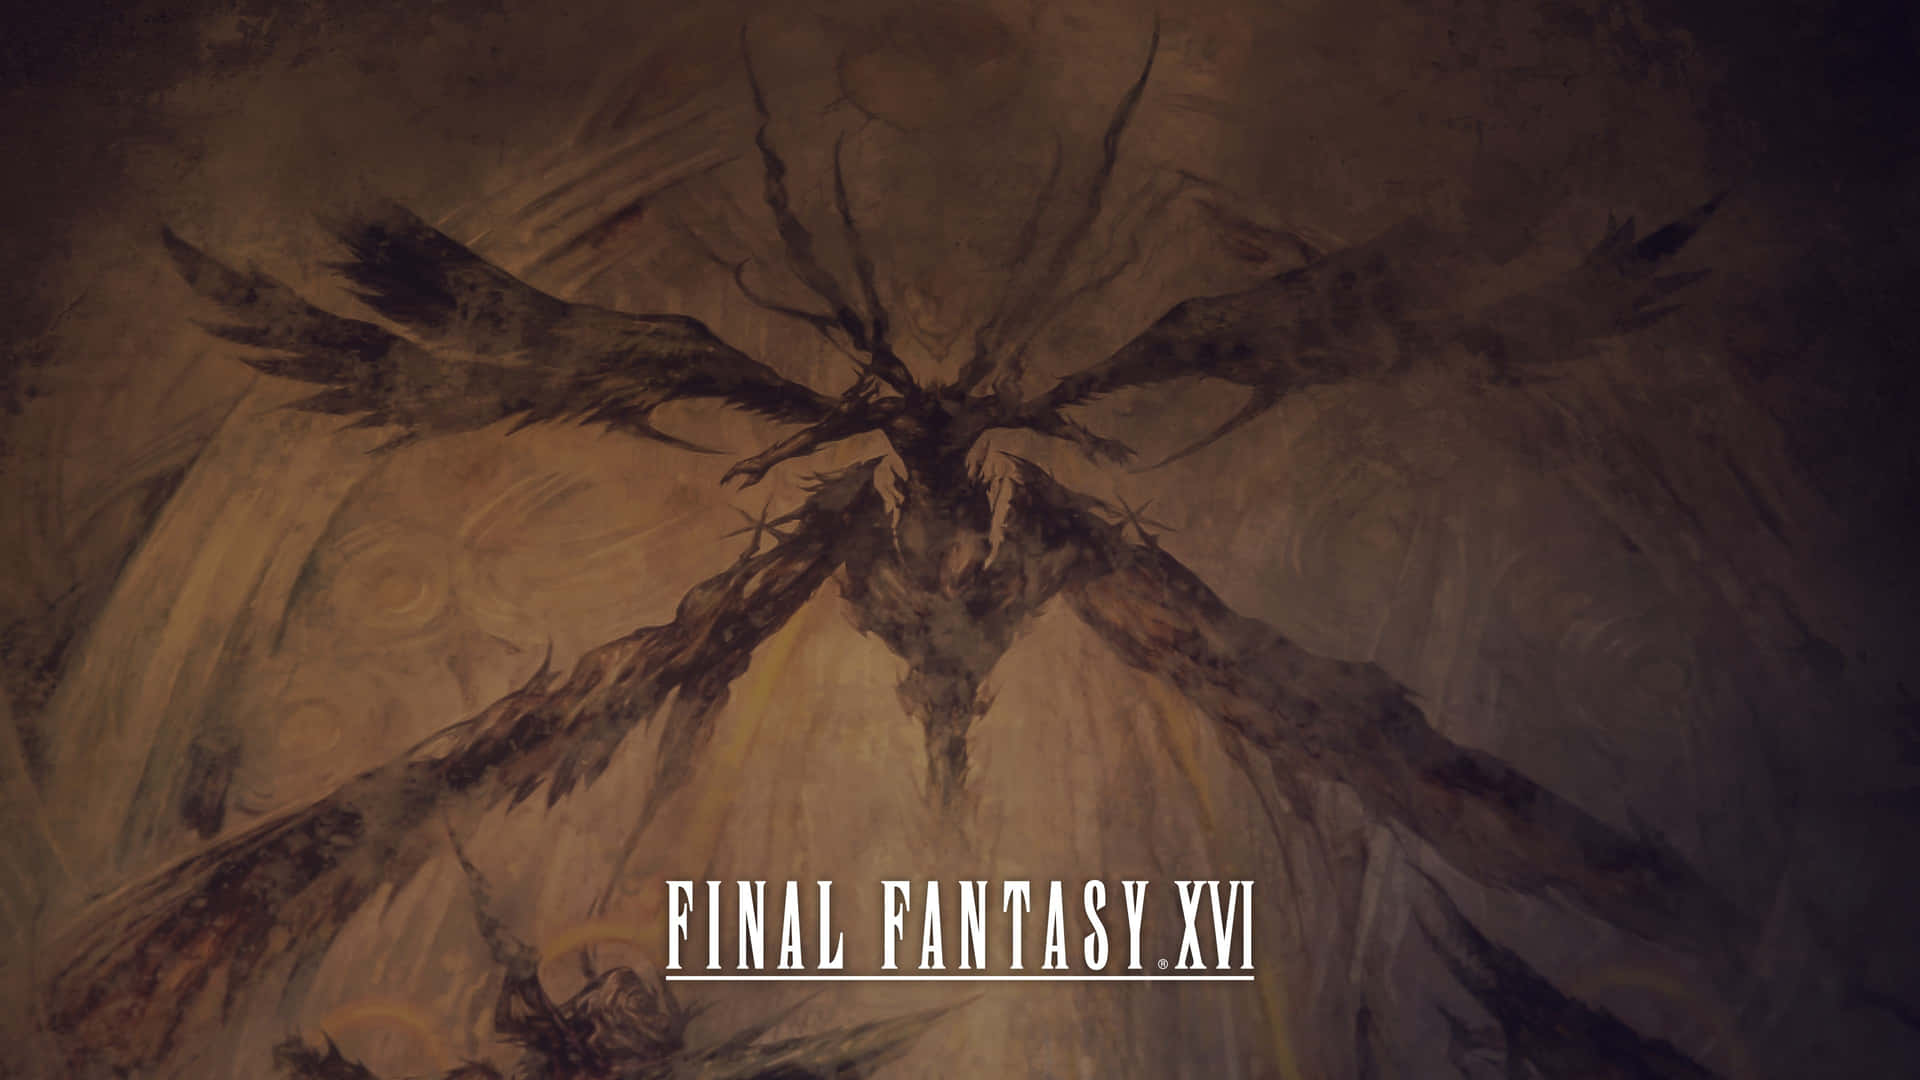 Final Fantasy X V I Phoenix Artwork Wallpaper